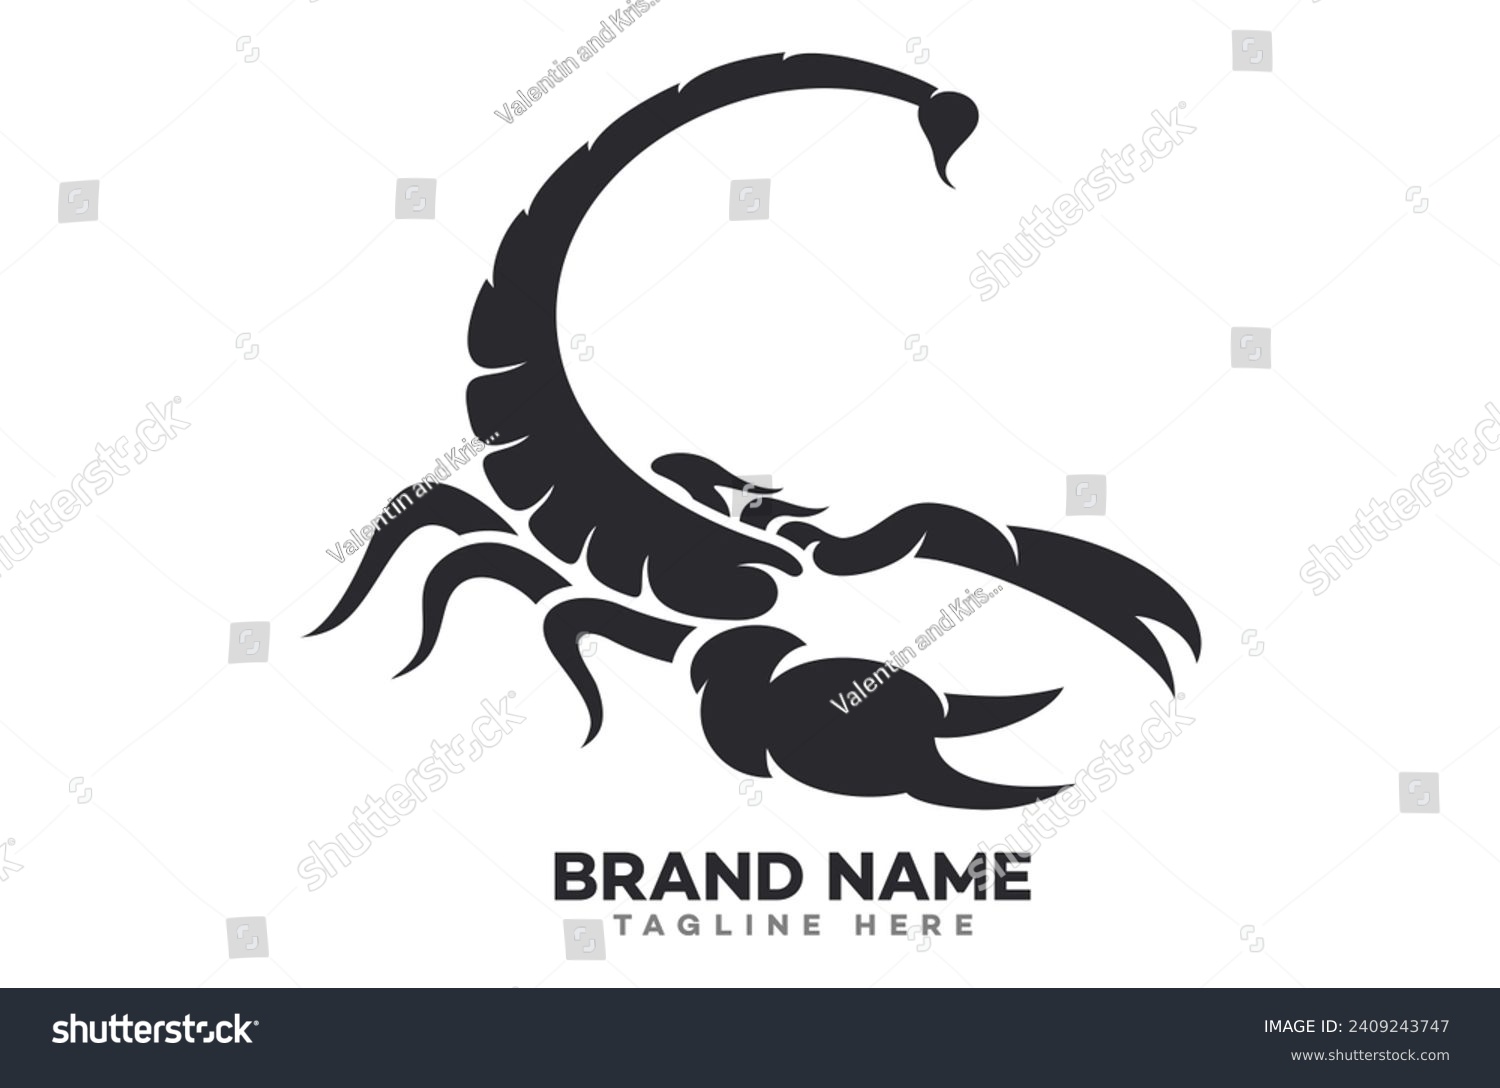 SVG of Modern logo scorpion in attack. Vector illustration. svg